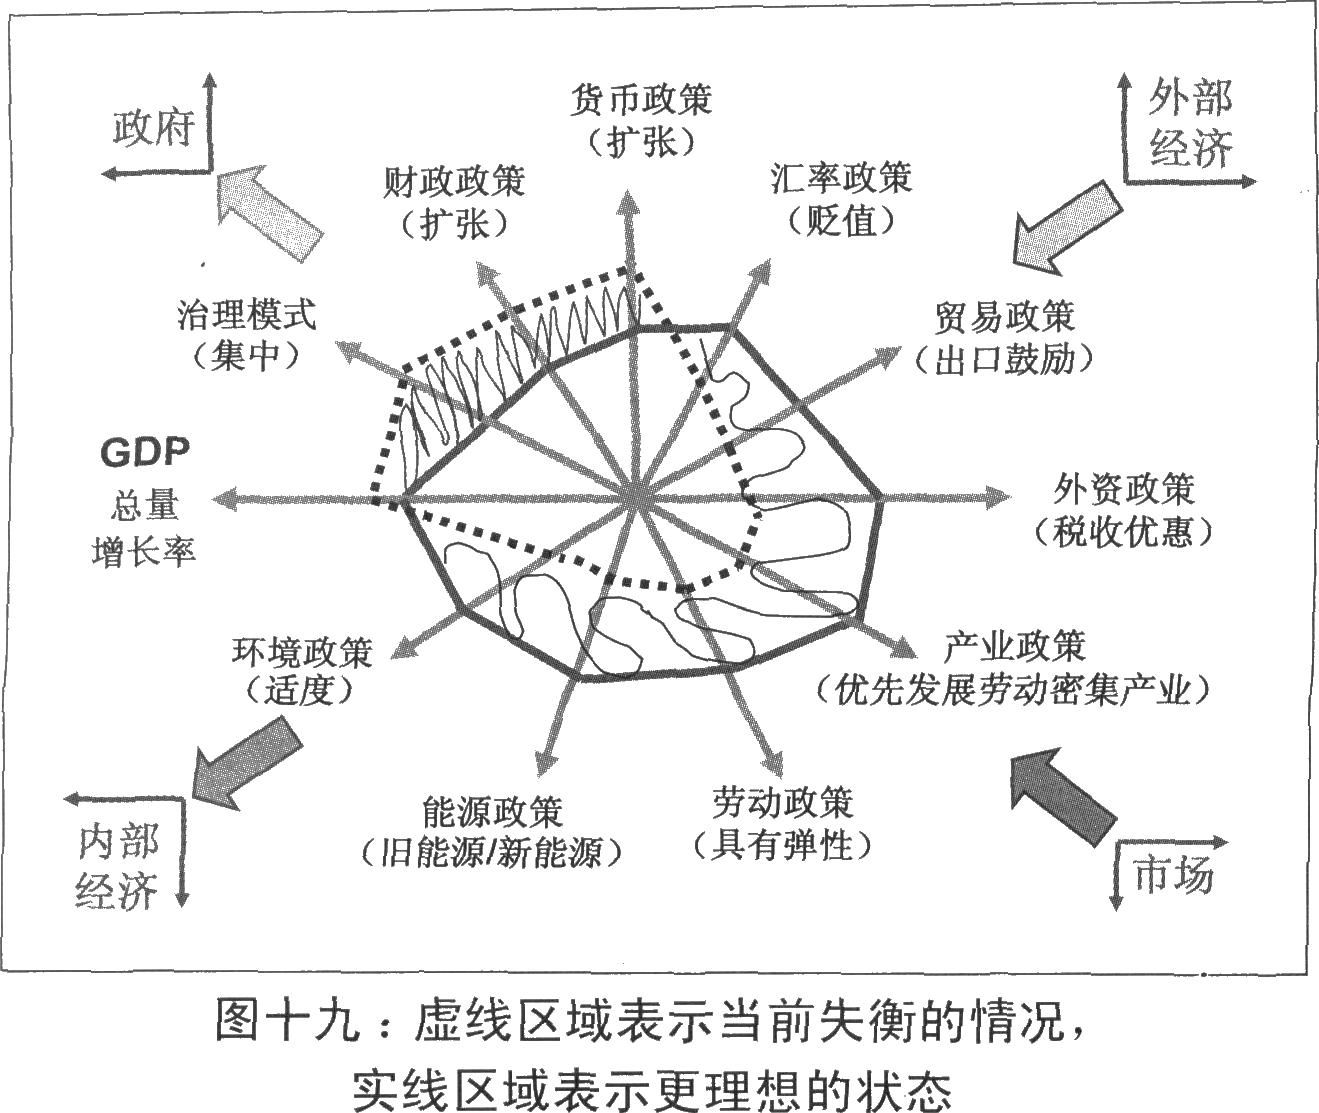 中國經濟(特定名詞)